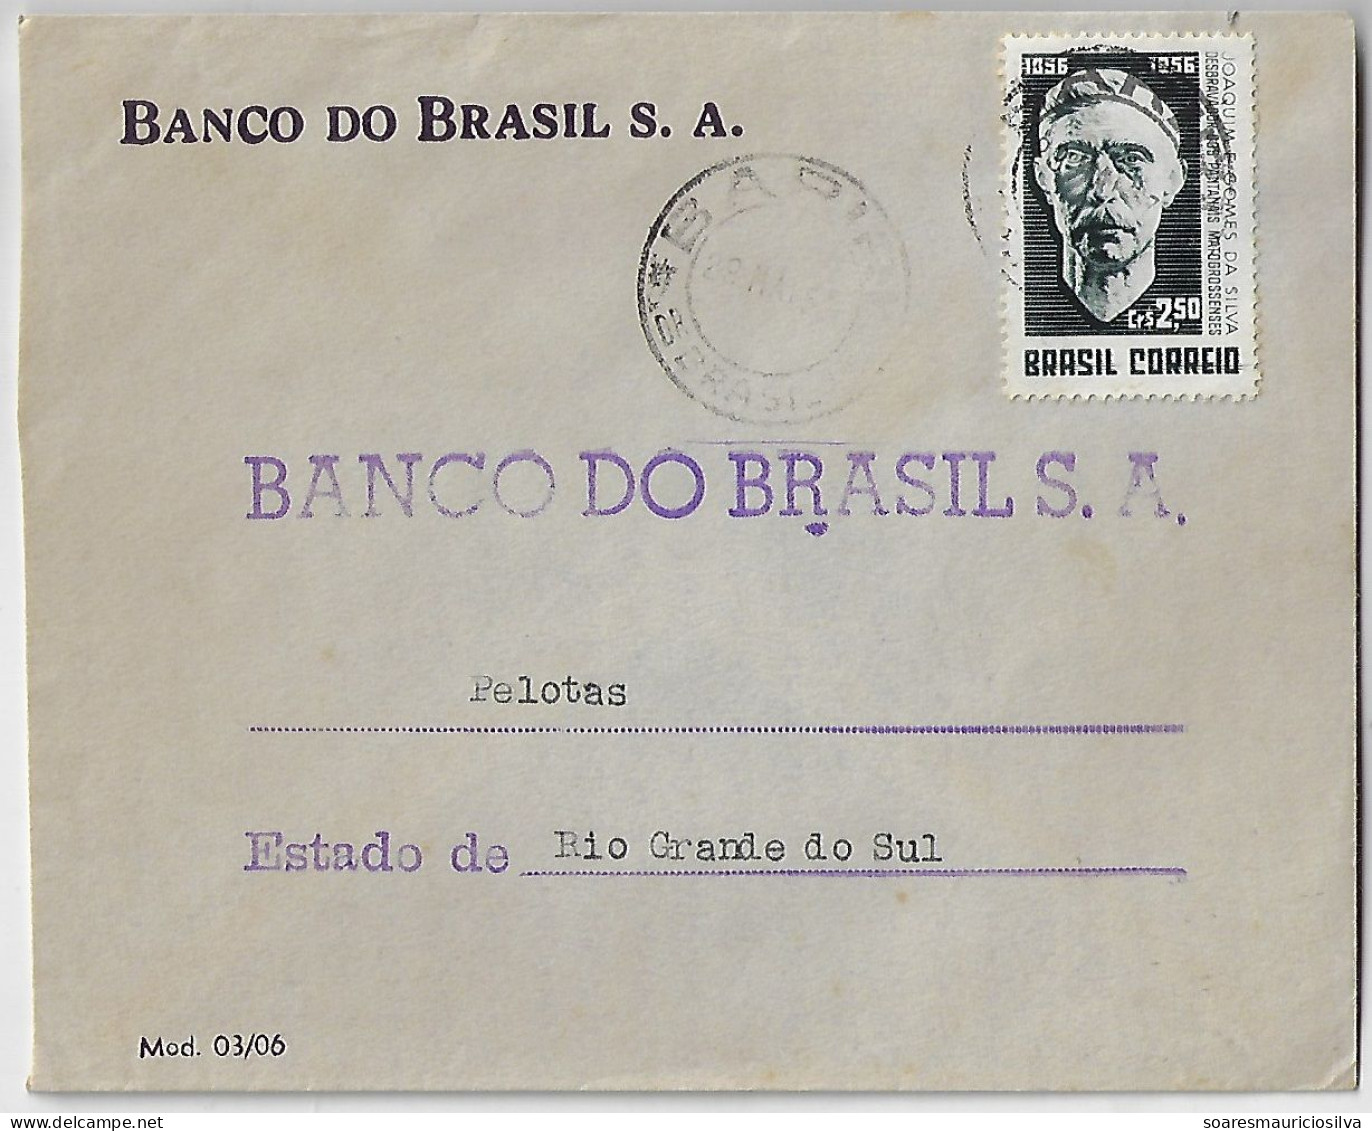 1956 Bank Of Brazil Cover Sent From São Paulo Agency Bariri To Pelotas Stamp Joaquim Eugênio Gomes Da Silva - Storia Postale